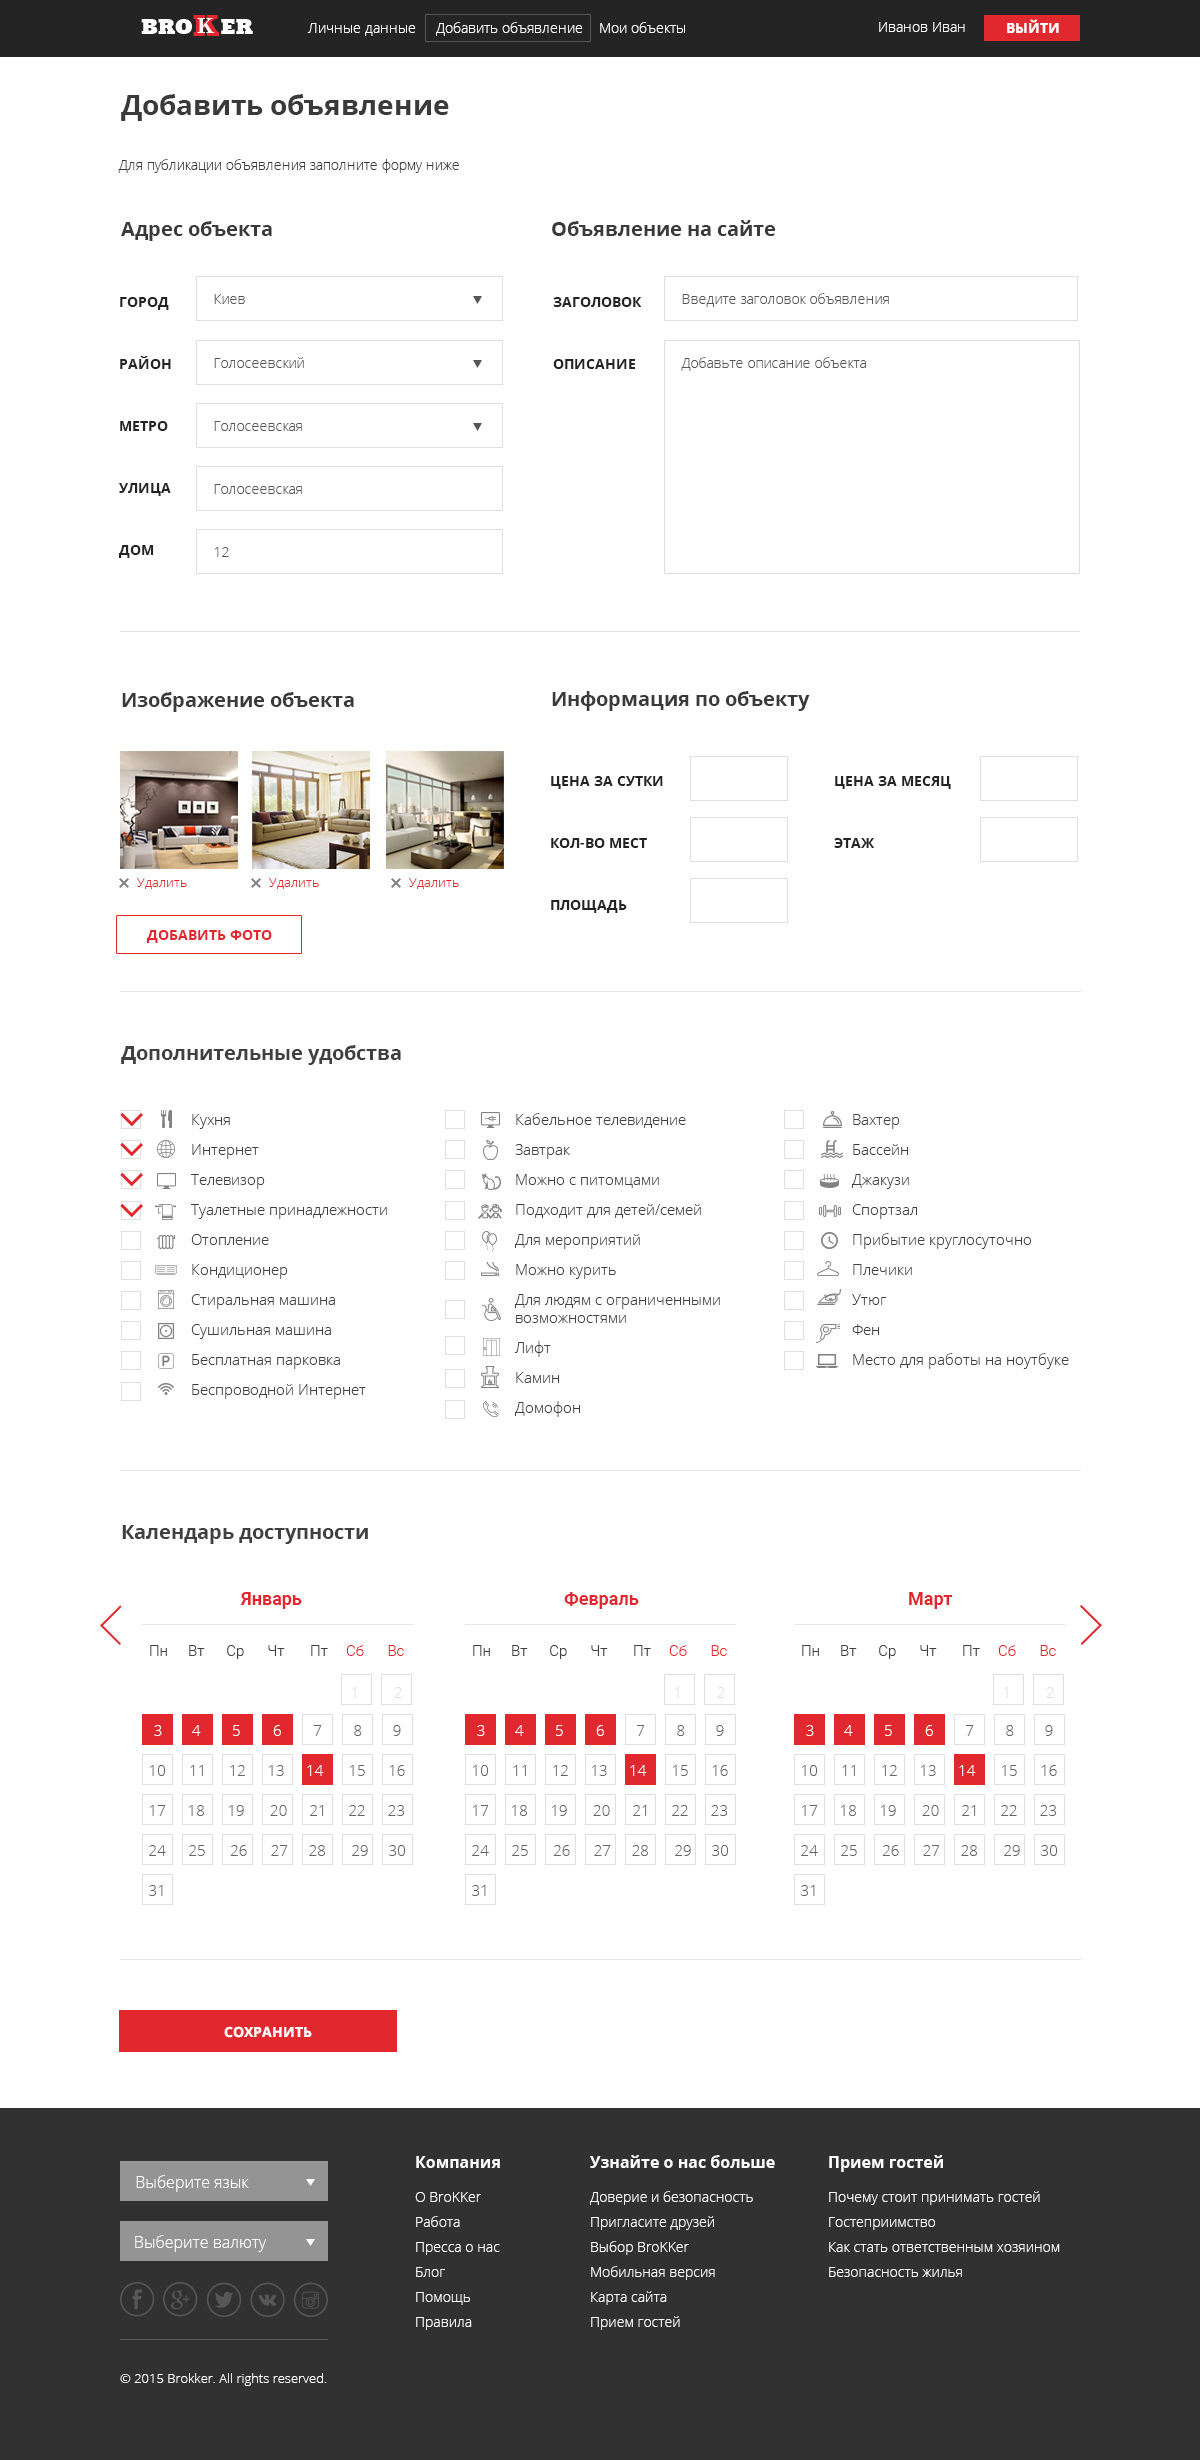 Add object page design of Brokker website